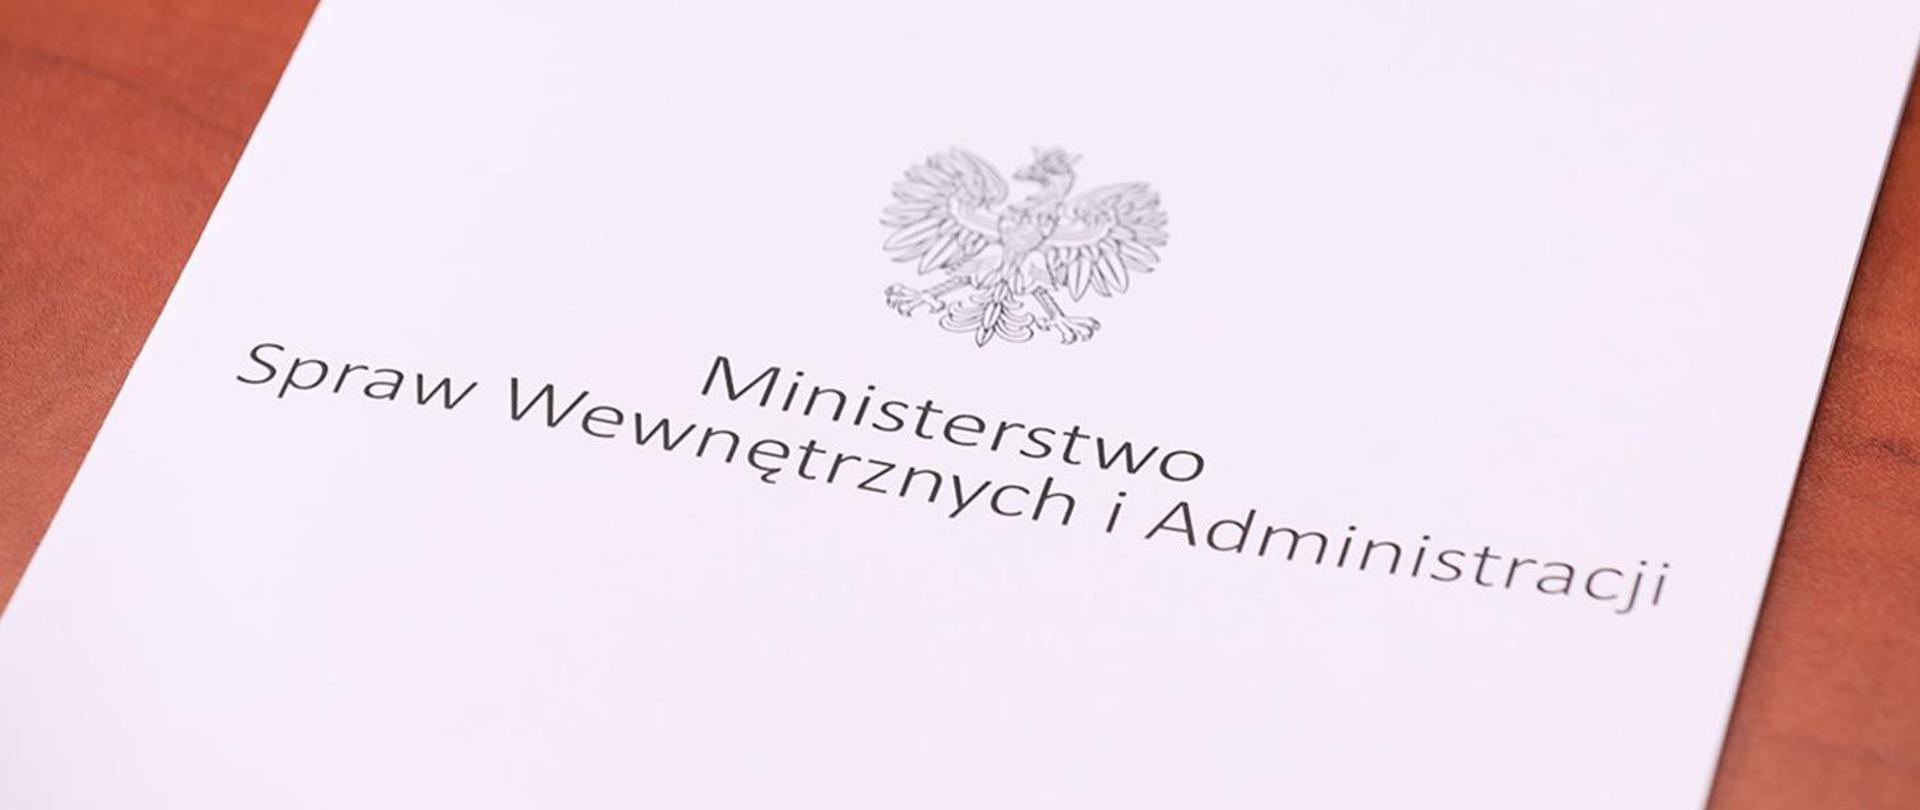 Zdjęcia okładki do dokumentów koloru białego na krótszym nadrukowano orła stanowiącego godło narodowe Polski, oraz napis Ministerstwo Spraw Wewnętrznych i Administracji. 